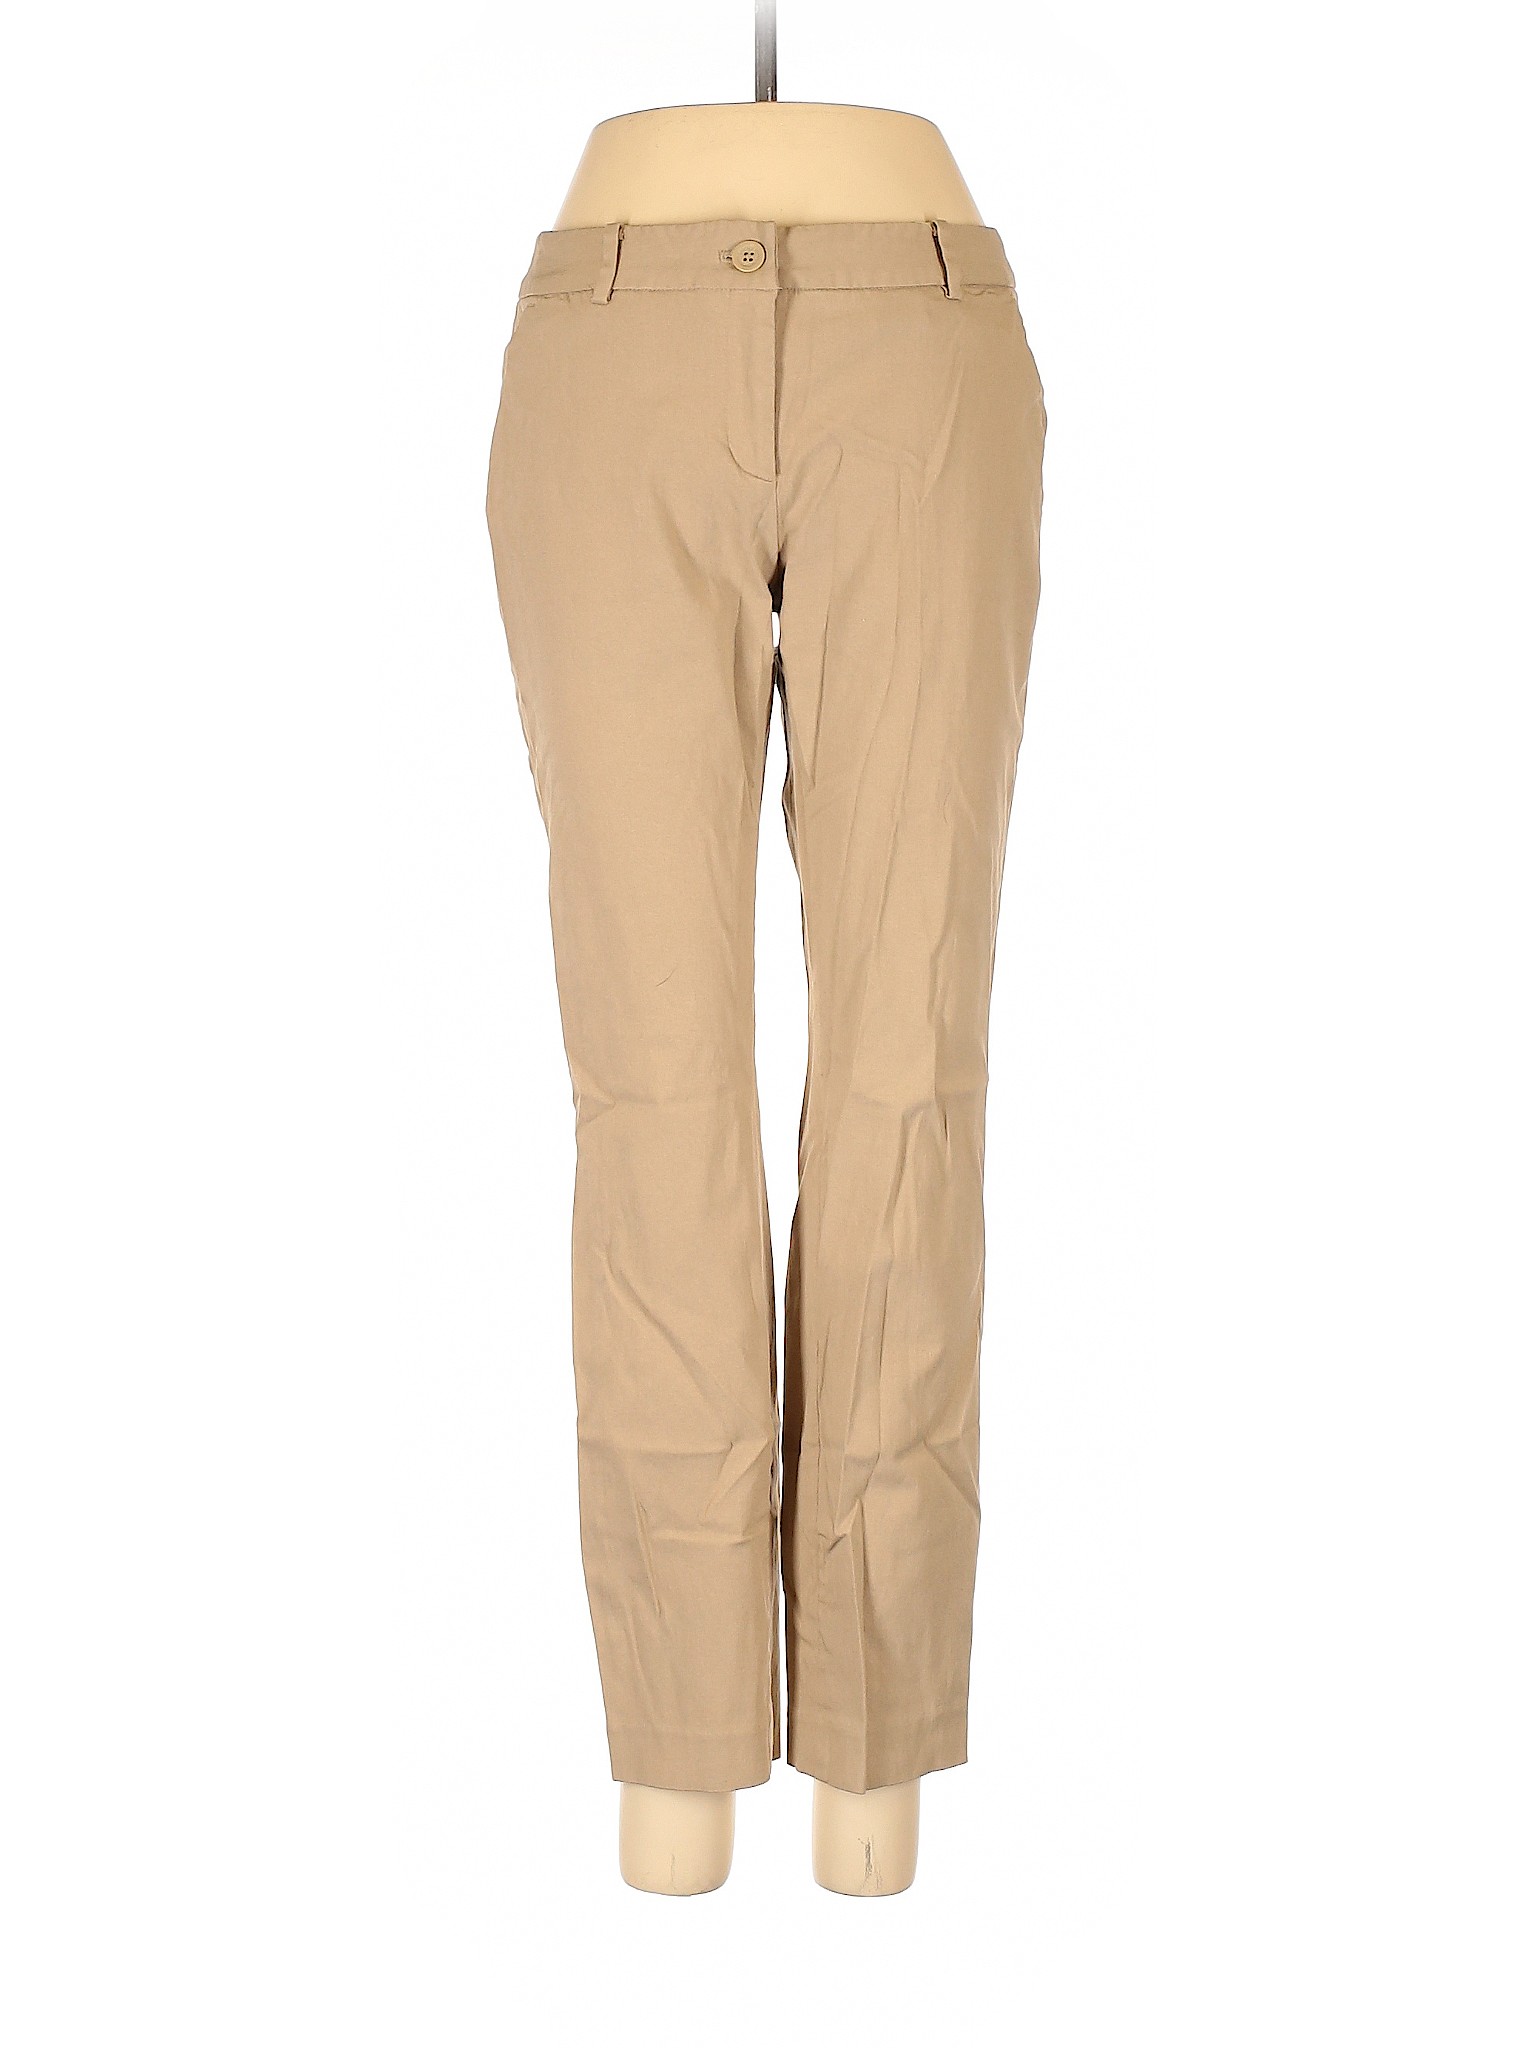 MICHAEL Michael Kors Women Brown Casual Pants 4 | eBay